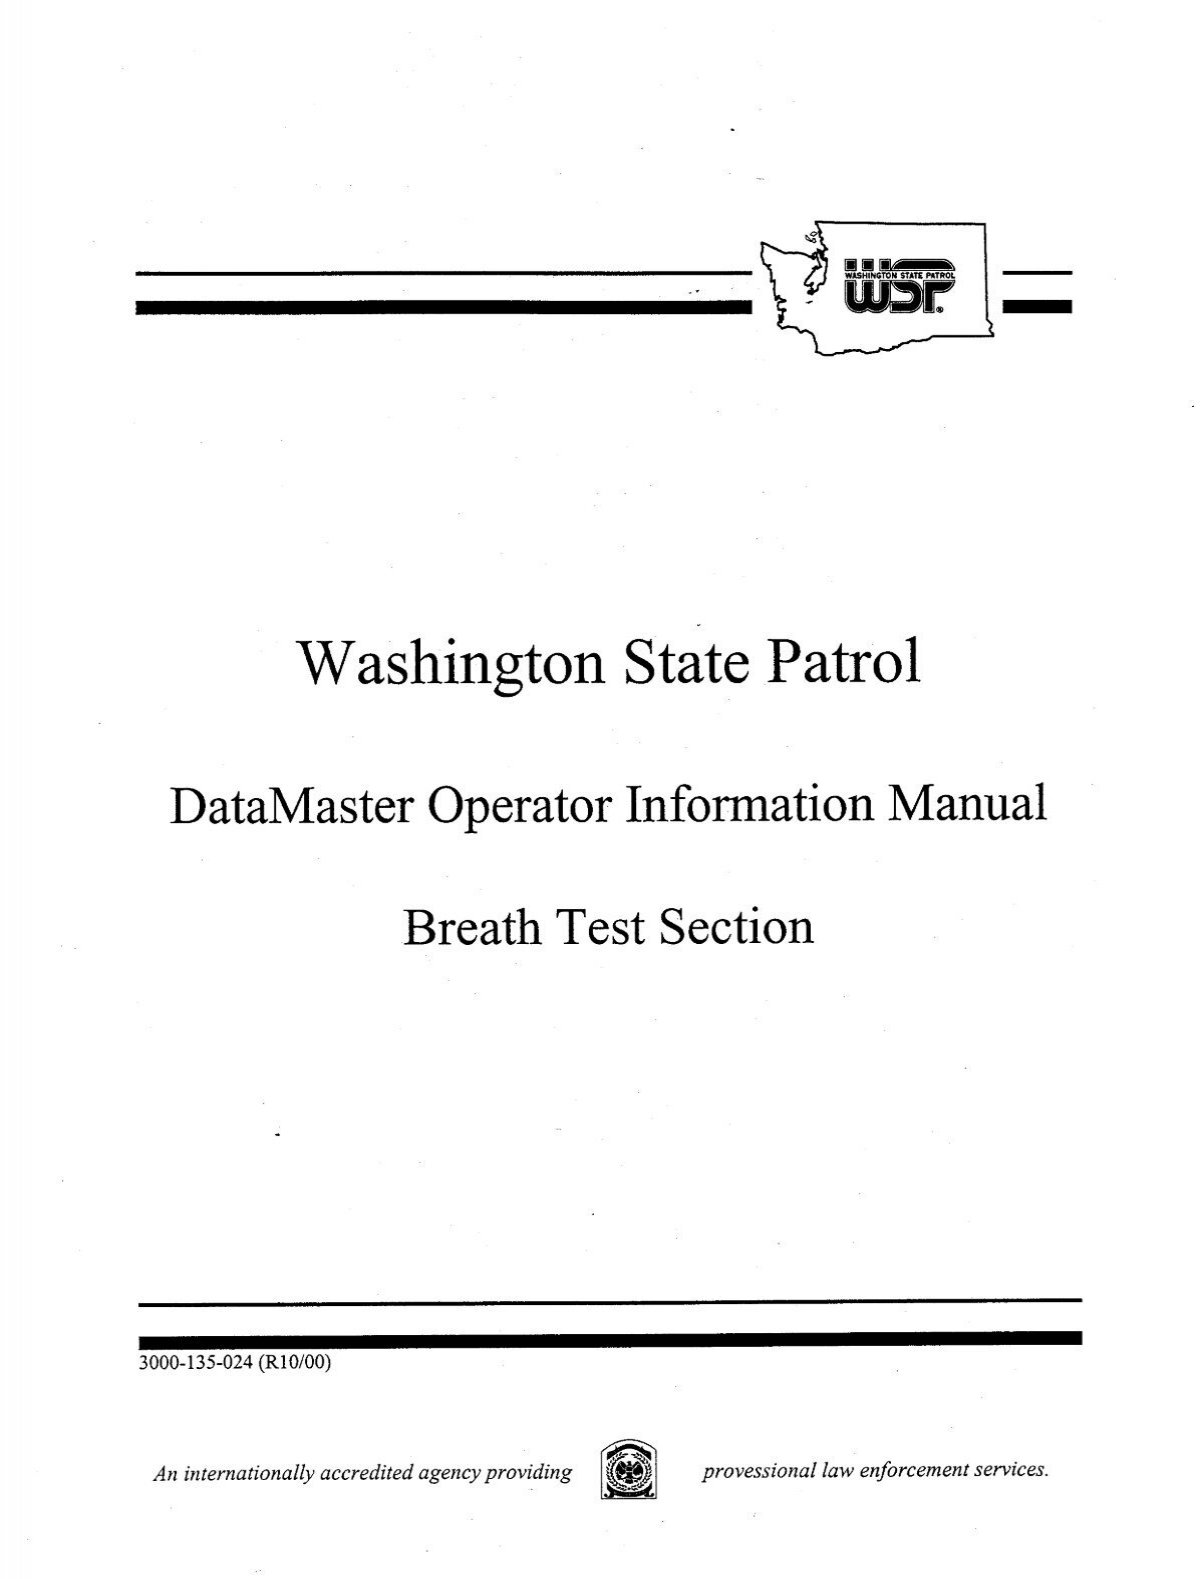 datamaster-operator-information-manual-washington-state-patrol